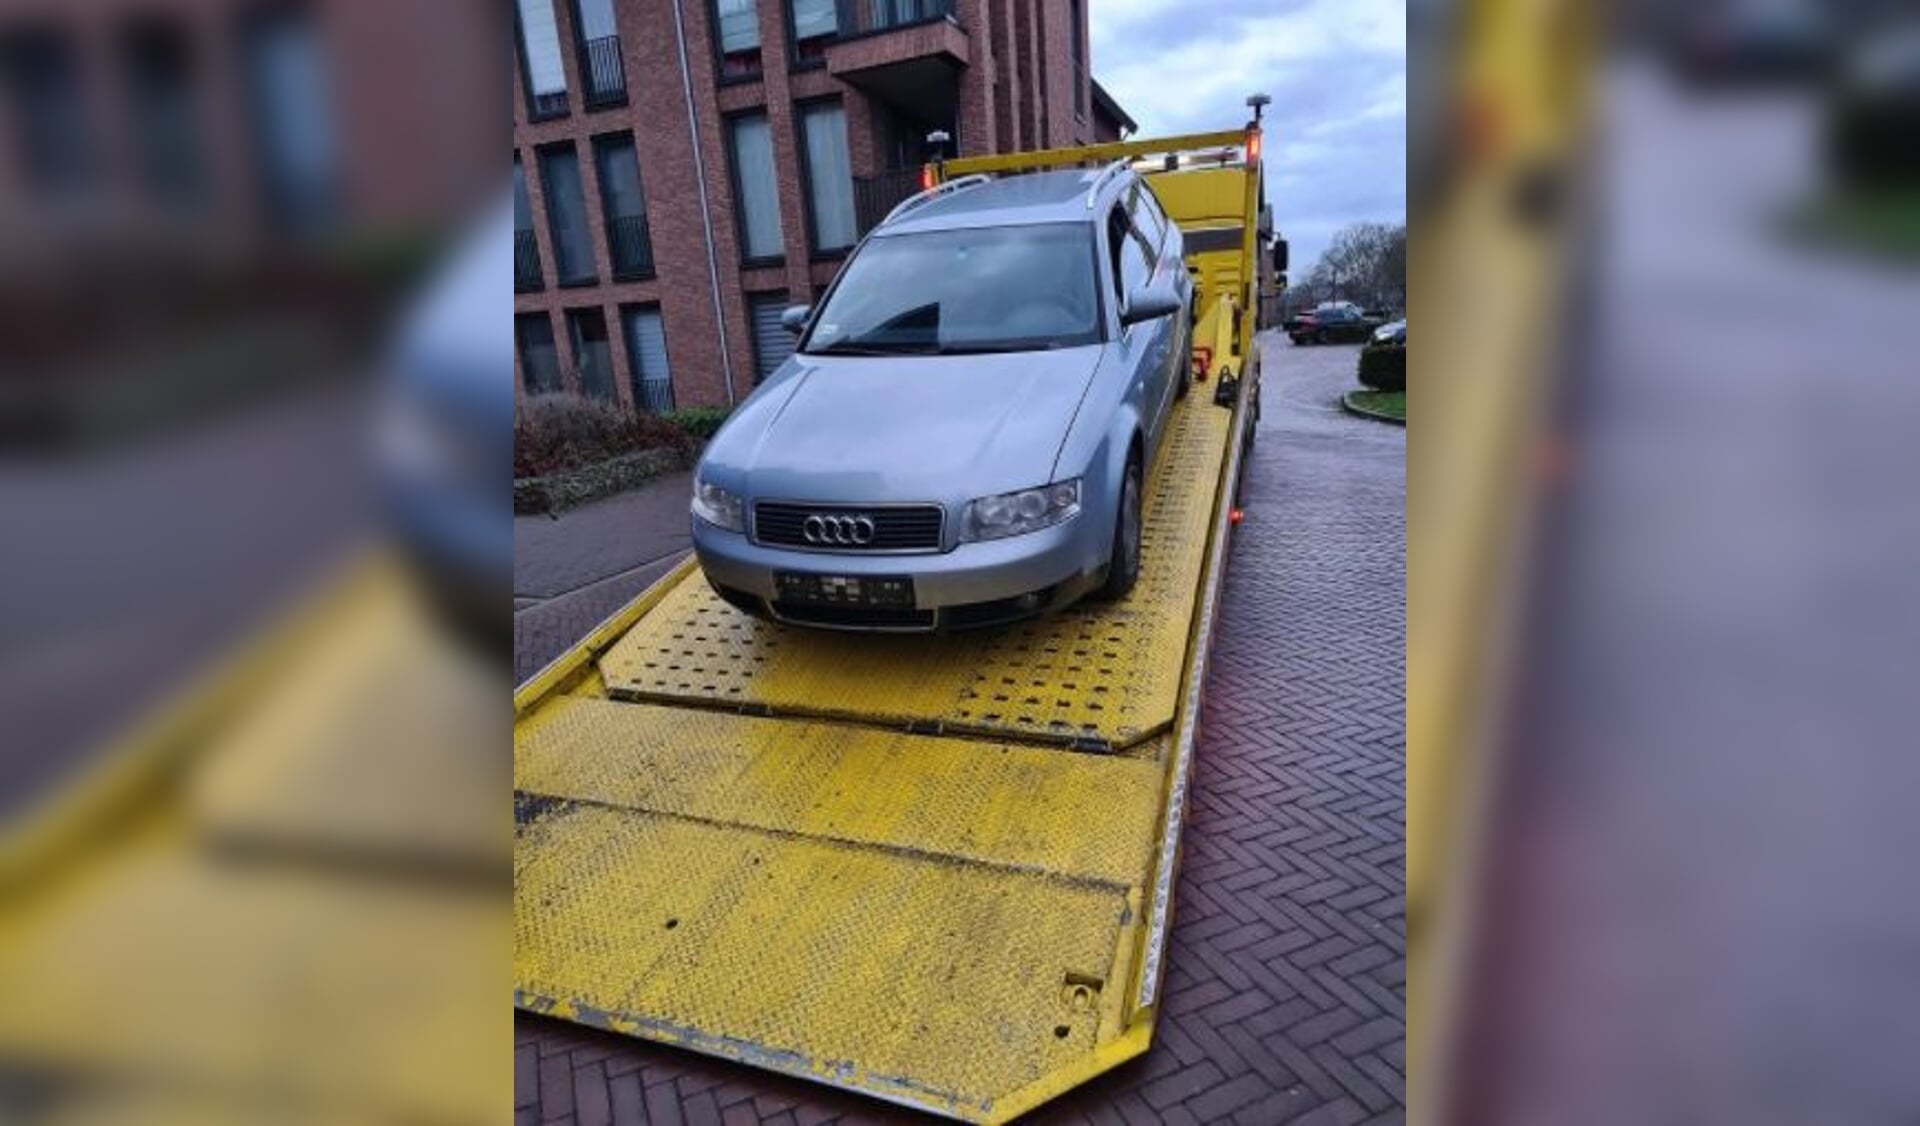 De politie van Boxmeer heeft maandag een auto in beslag genomen.